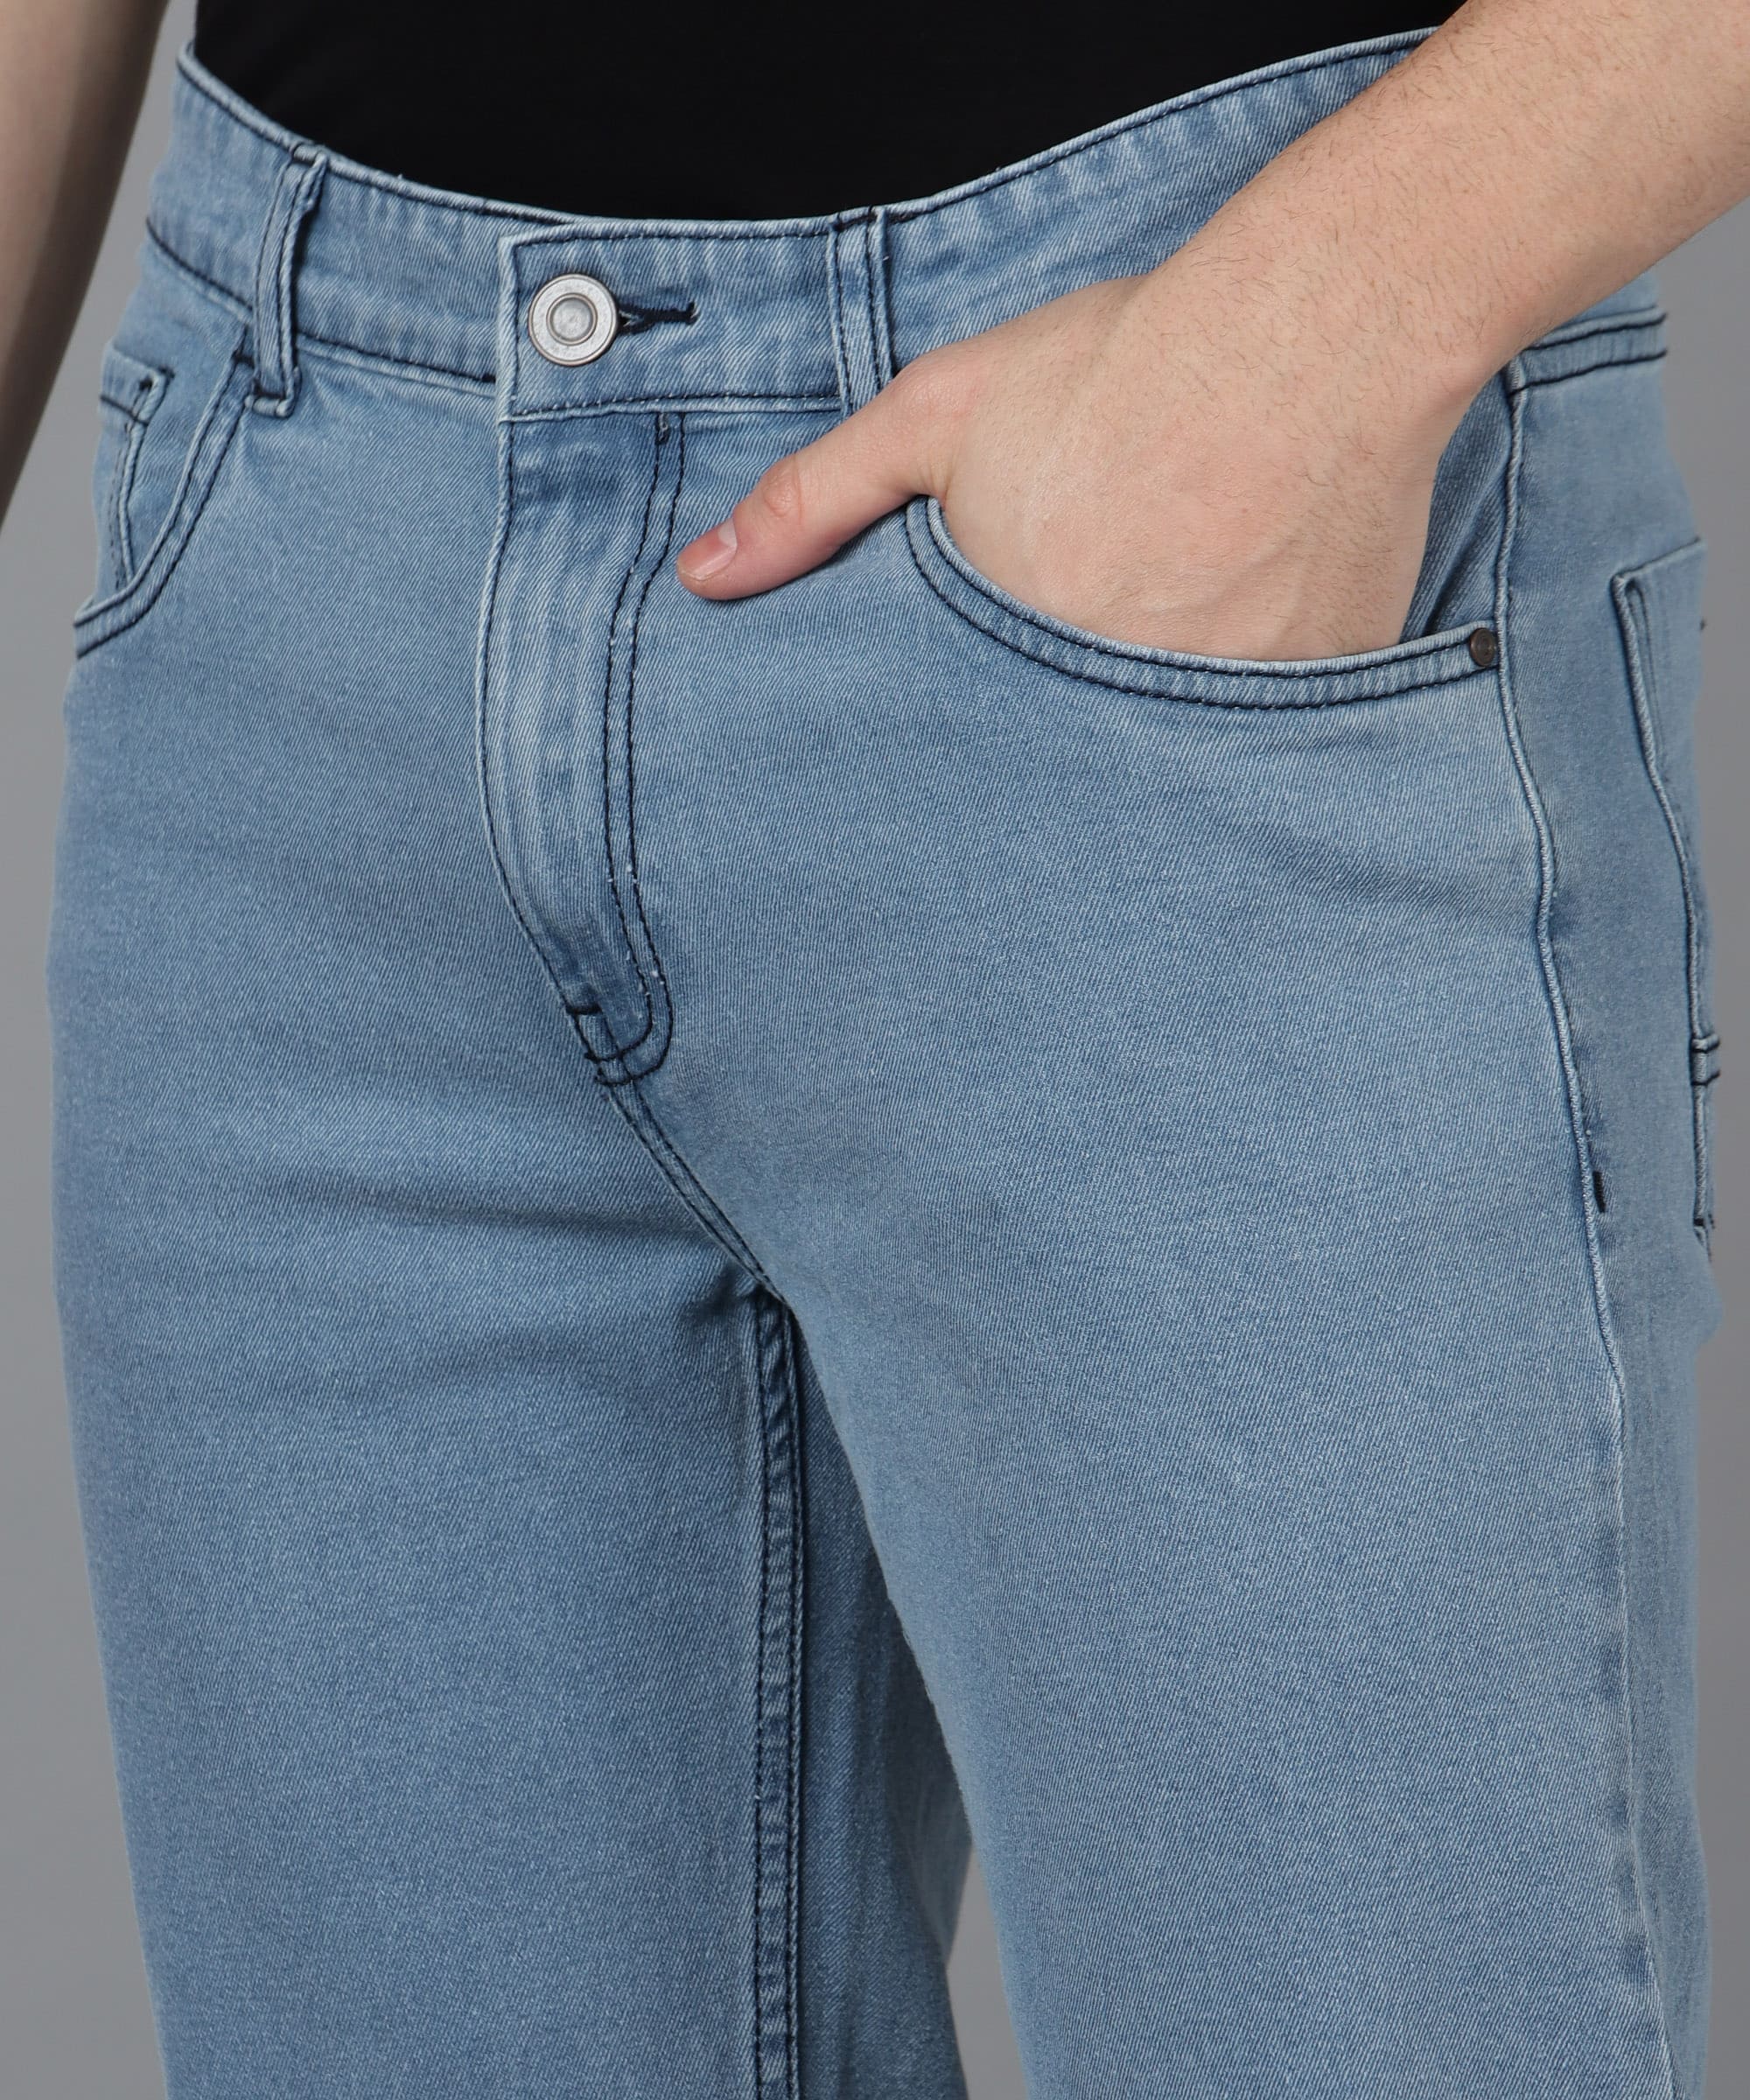 Men's Sky Blue Regular Fit Washed Jeans Stretchable